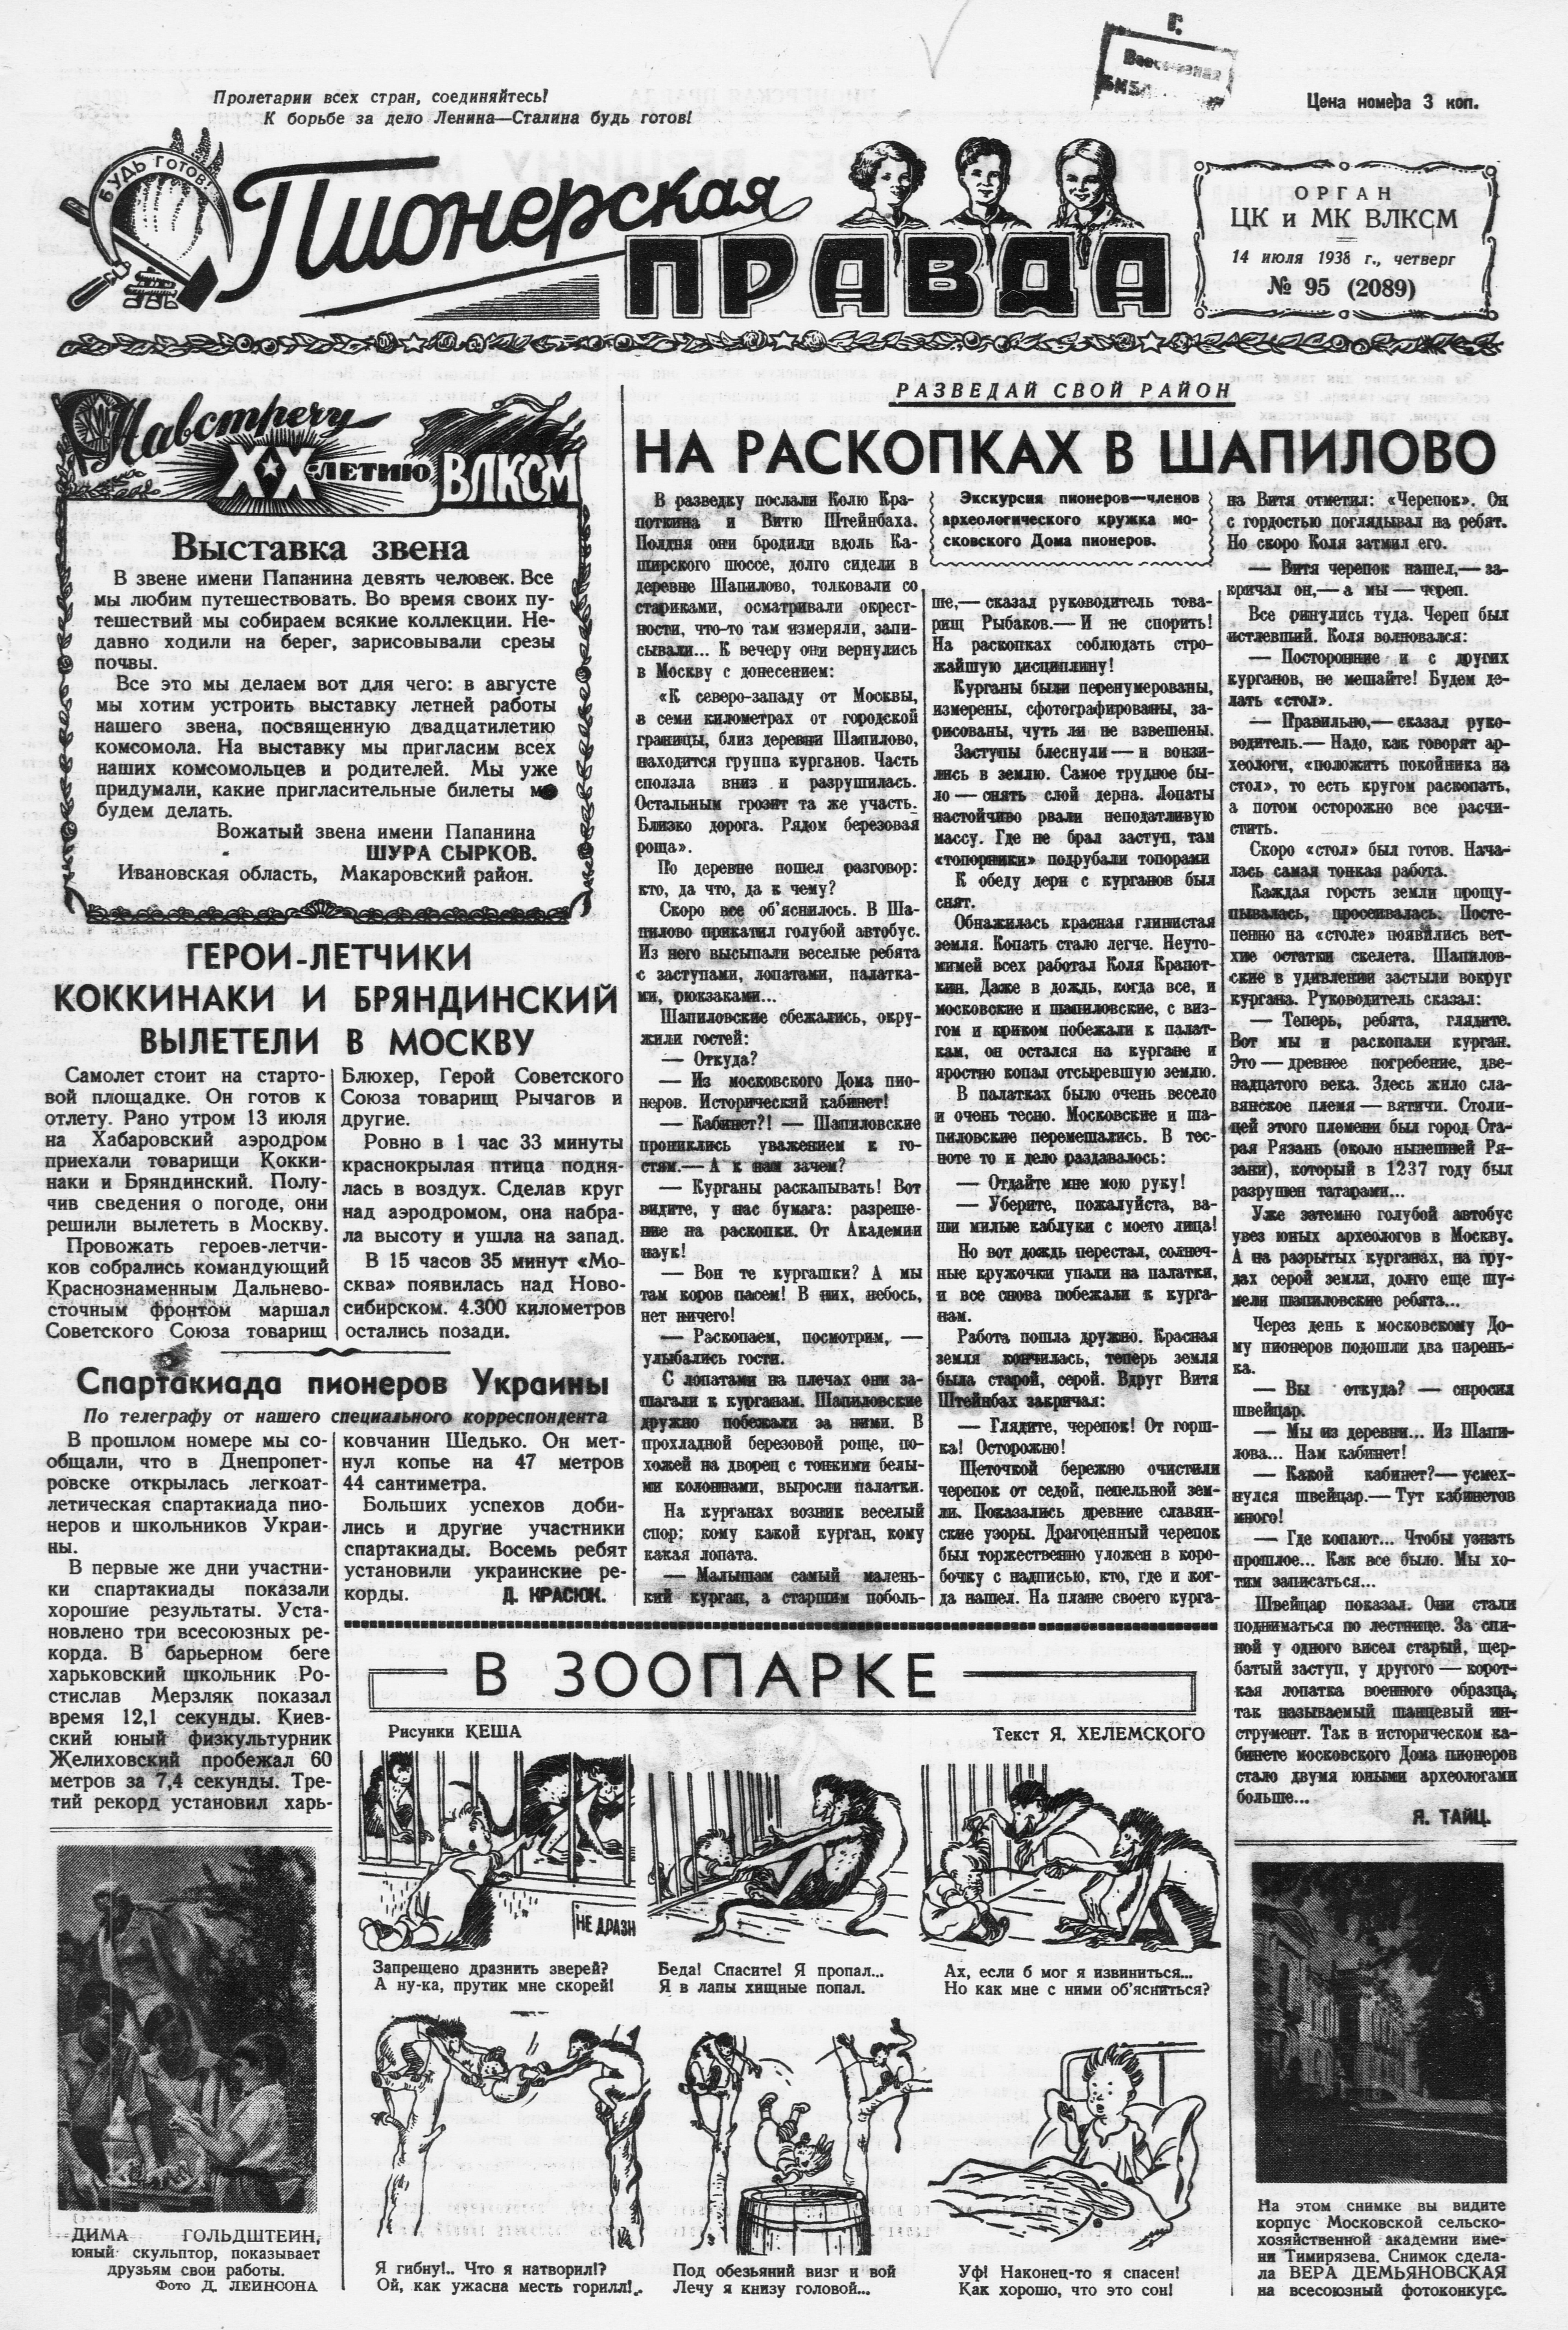 Пионерская правда. 1938. № 095 (2089): Орган ЦК и МК ВЛКСМ - 1938